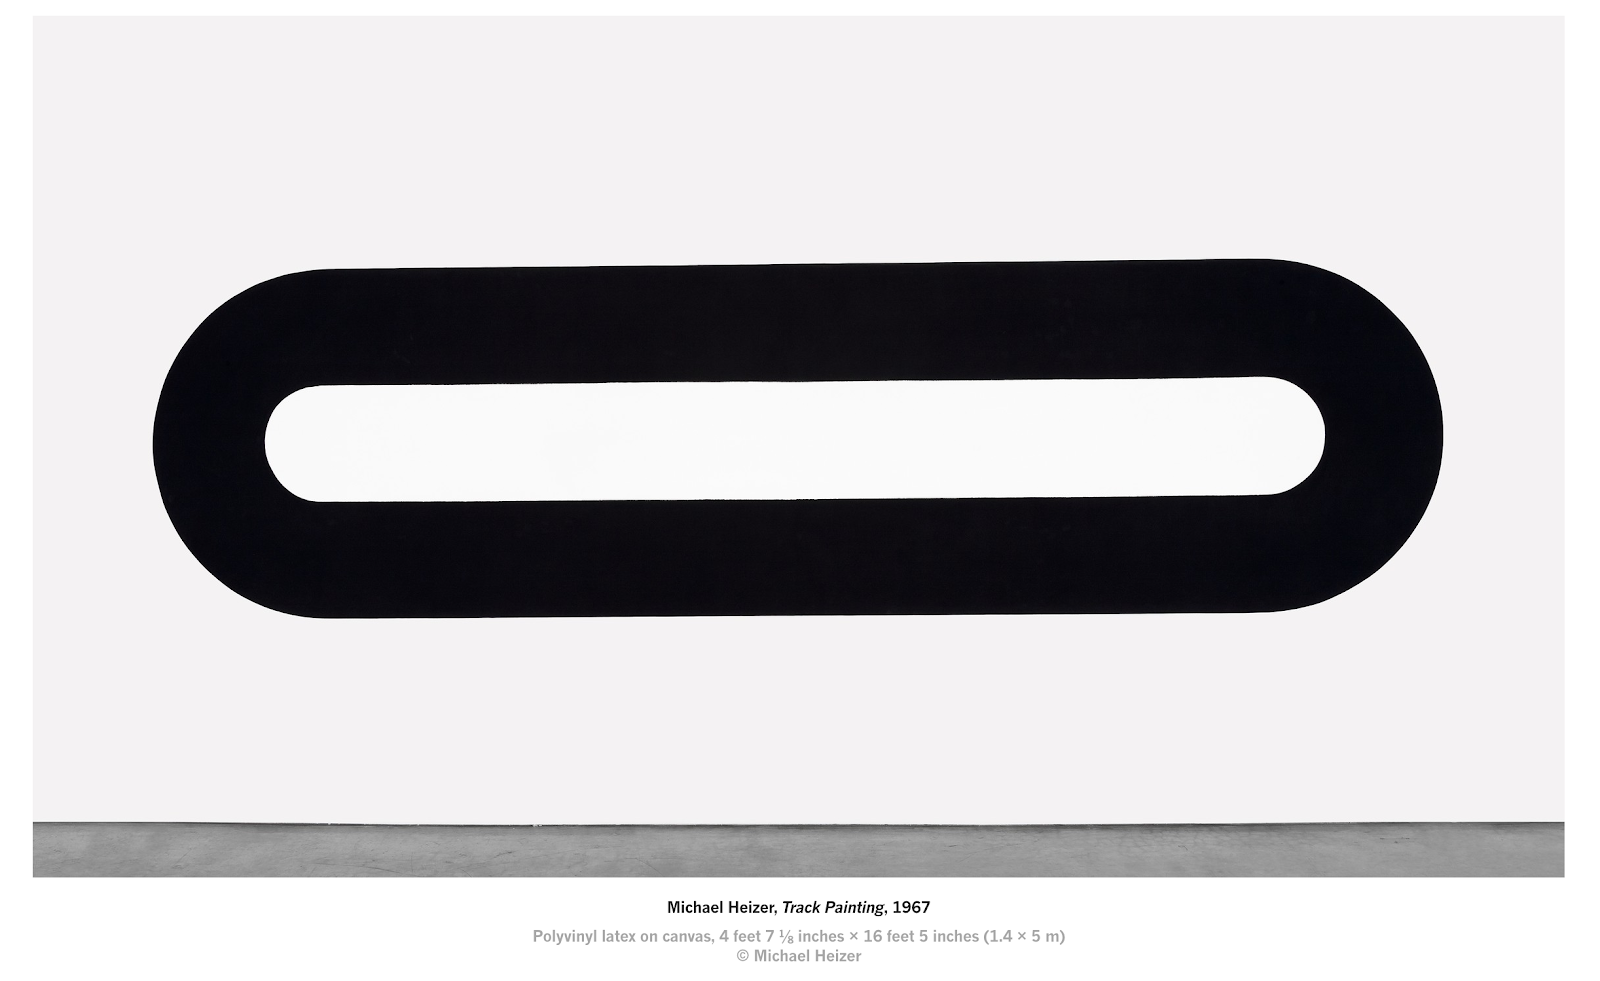 Michael Heizer: 'I'm a quiet man. I just make art', Art